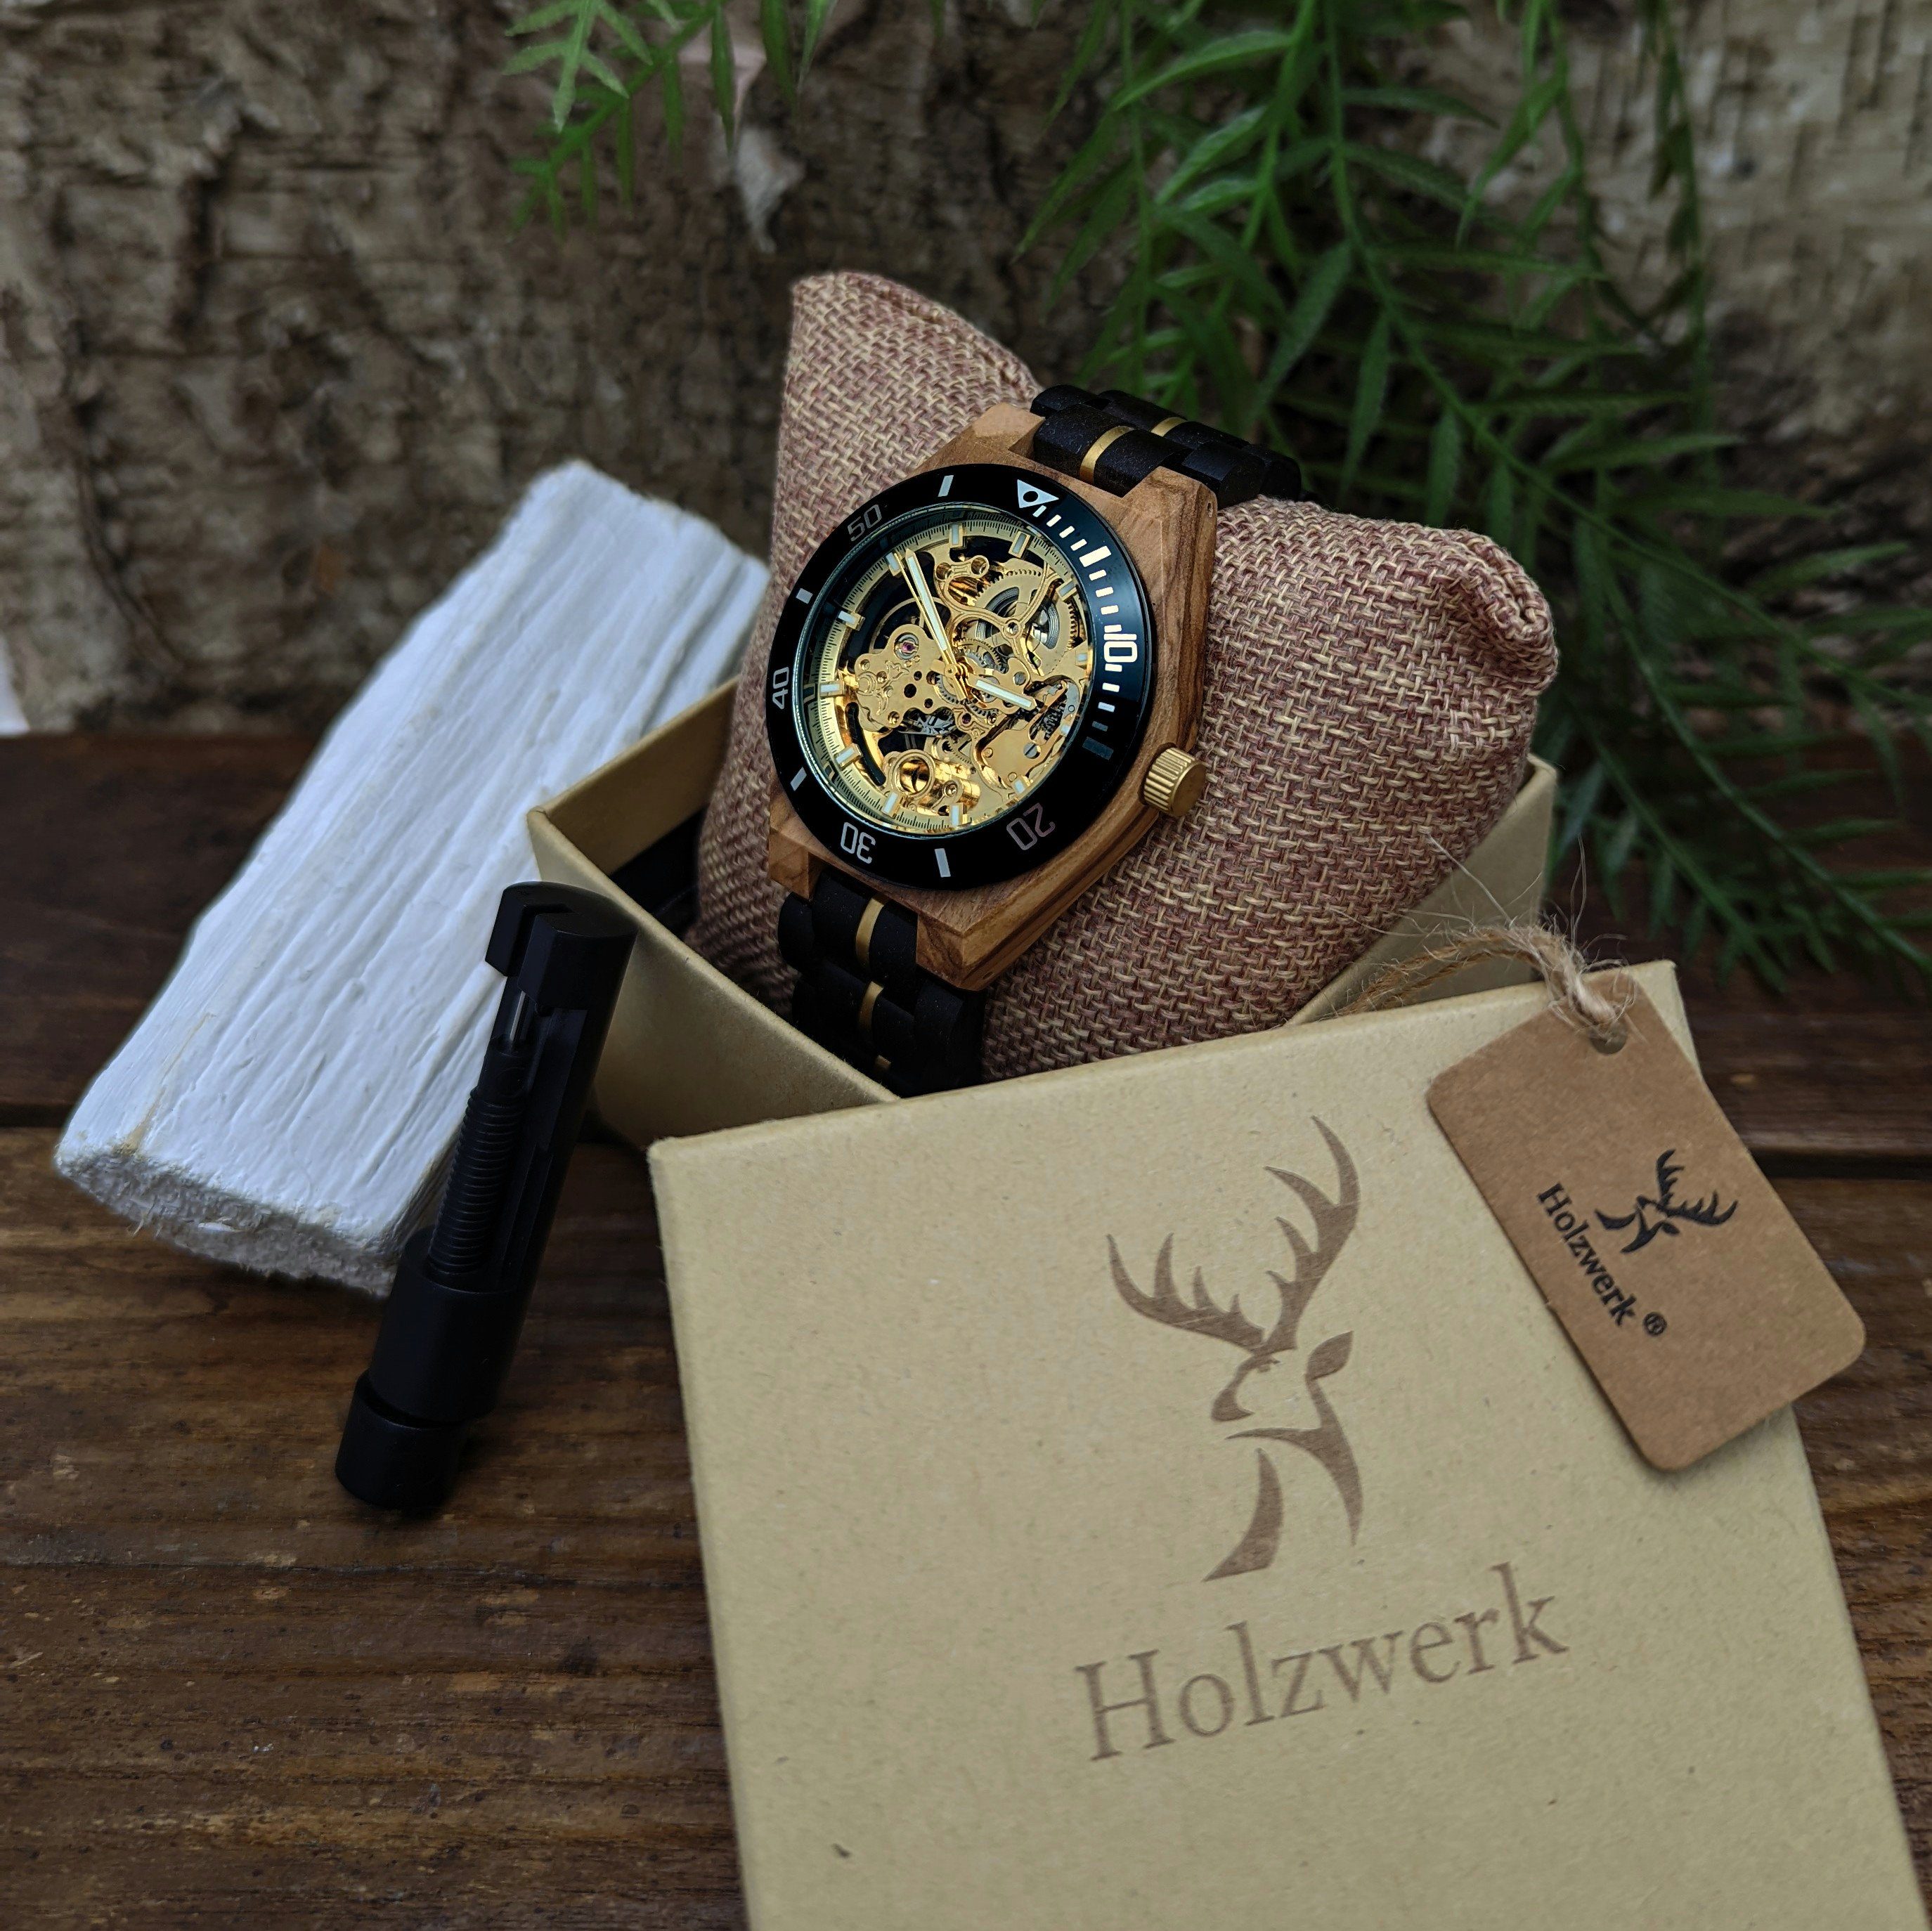 Armband Herren in Edelstahl beige, schwarz, Uhr gold CALAU Automatikuhr Holzwerk & Holz